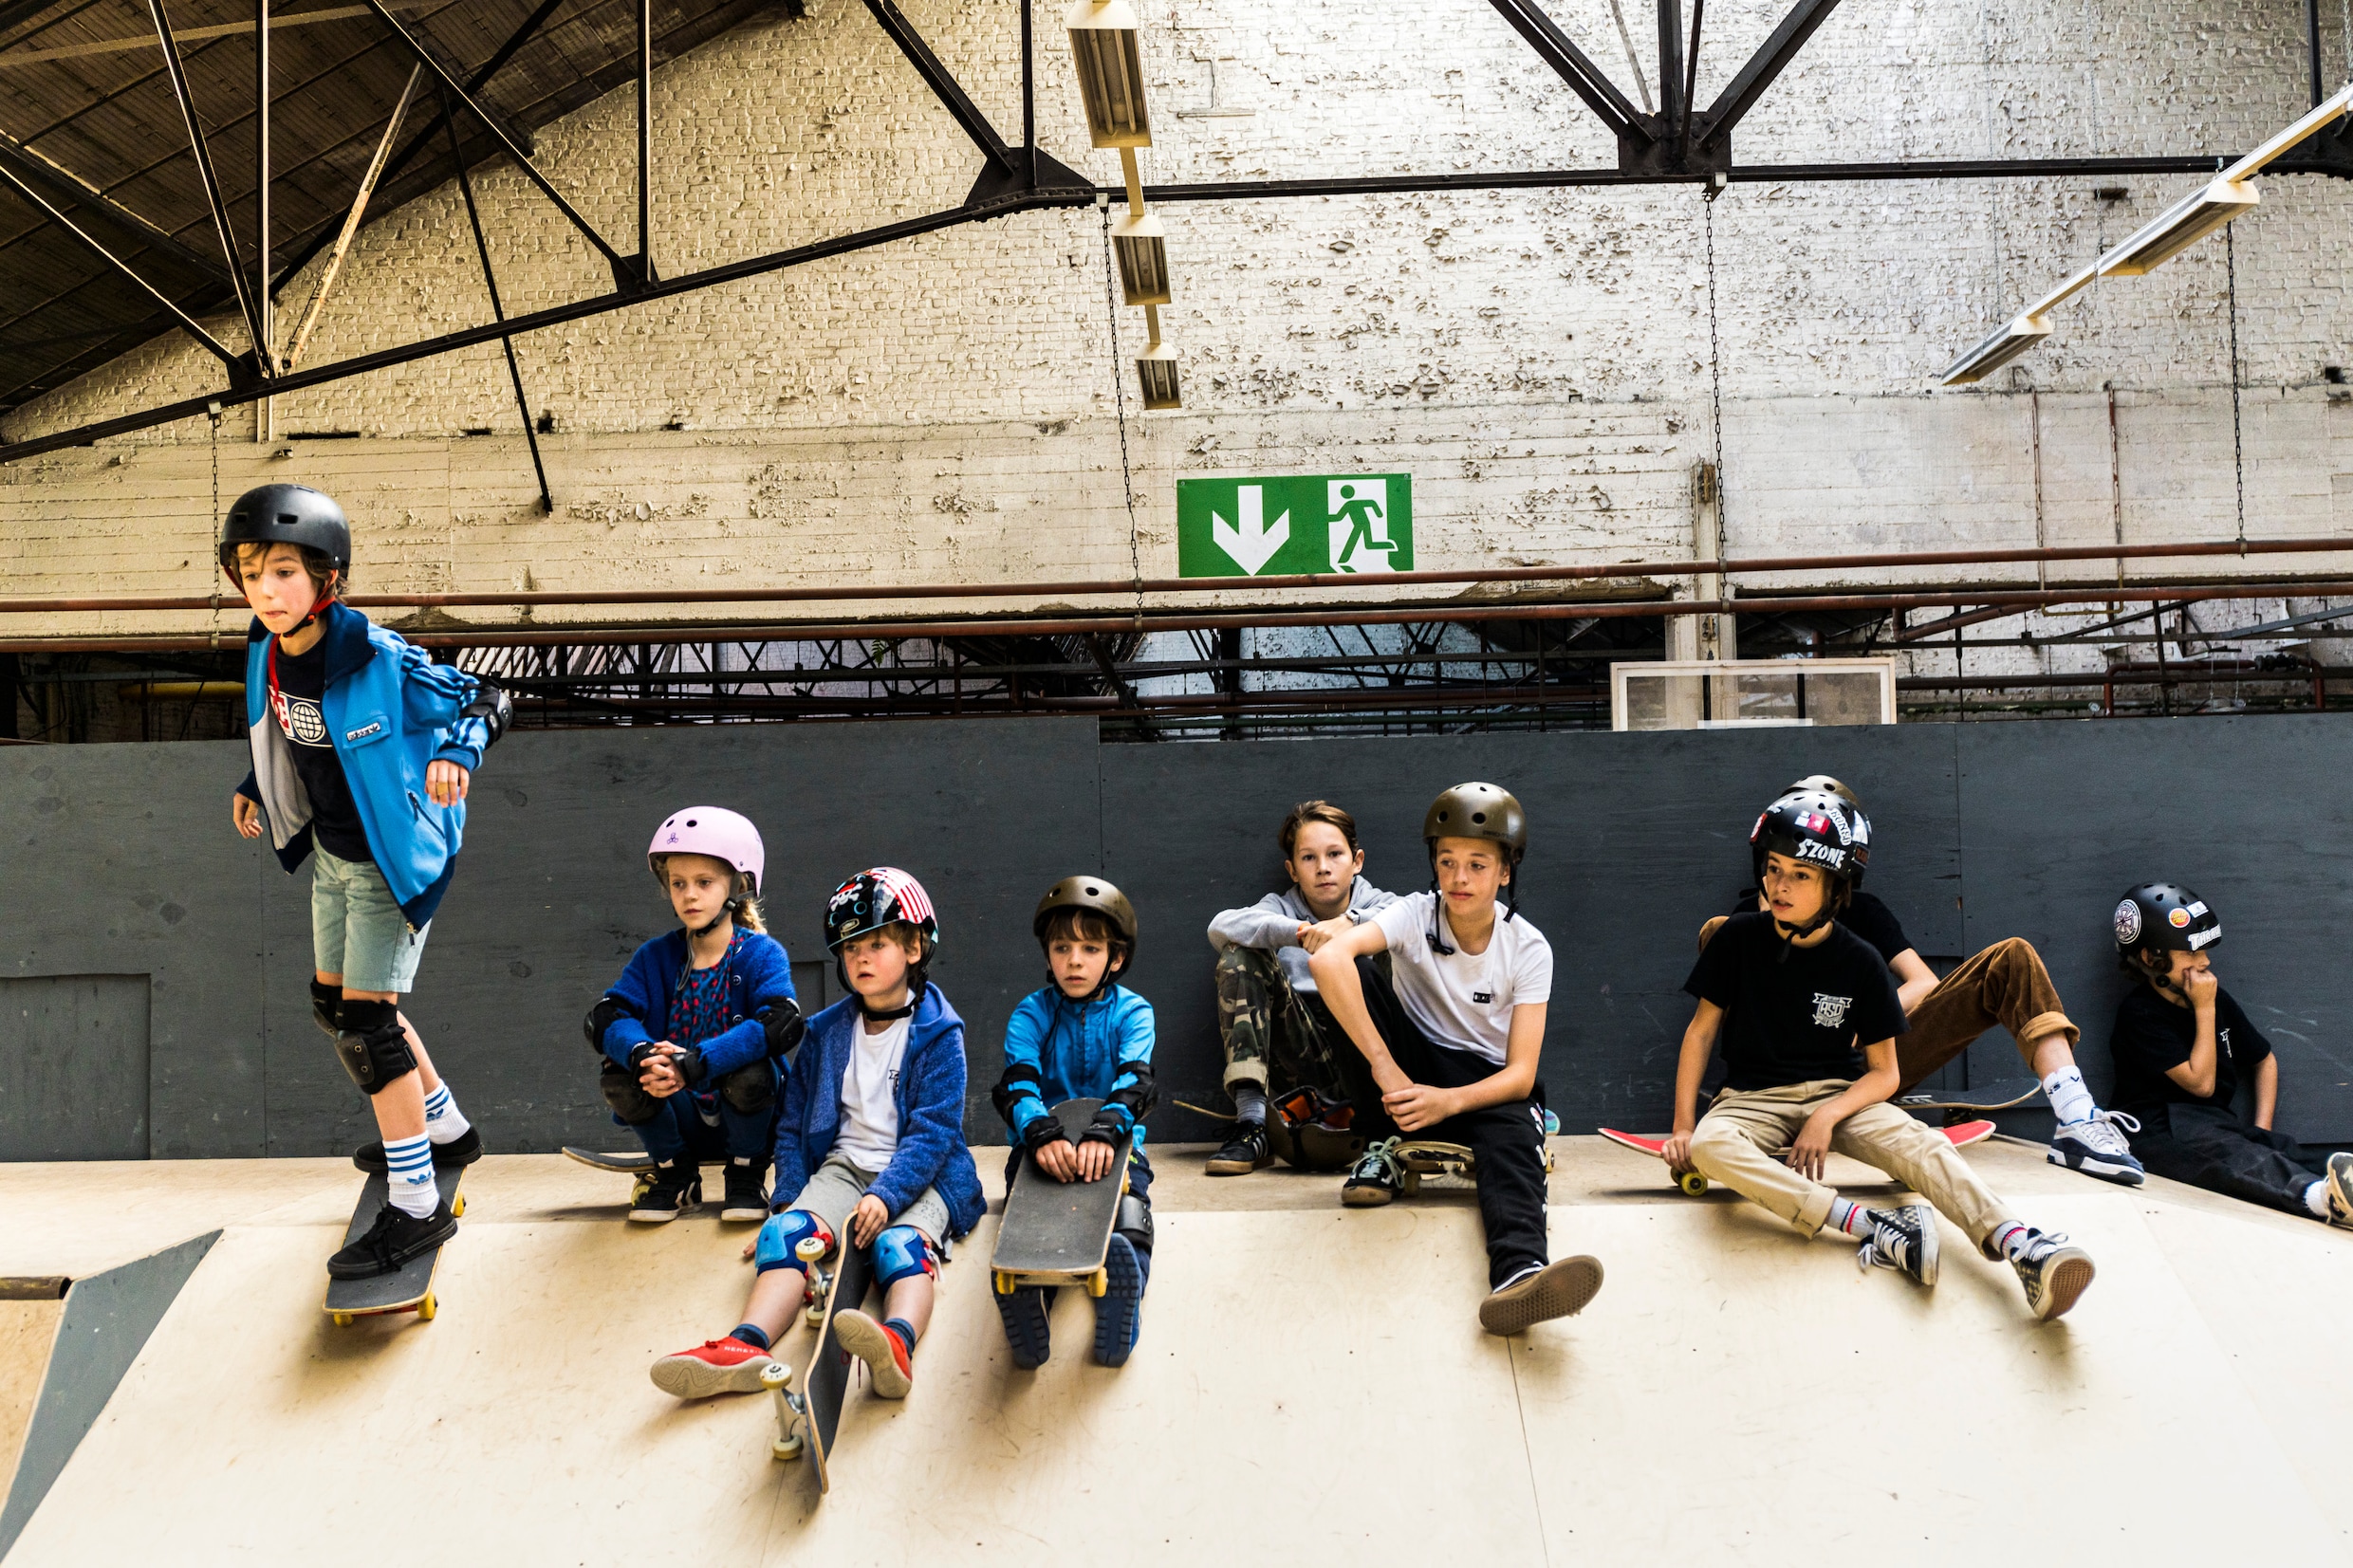 Grootste indoorskatepark van België opent dit weekend de deuren: ‘Skaten is een levensstijl’